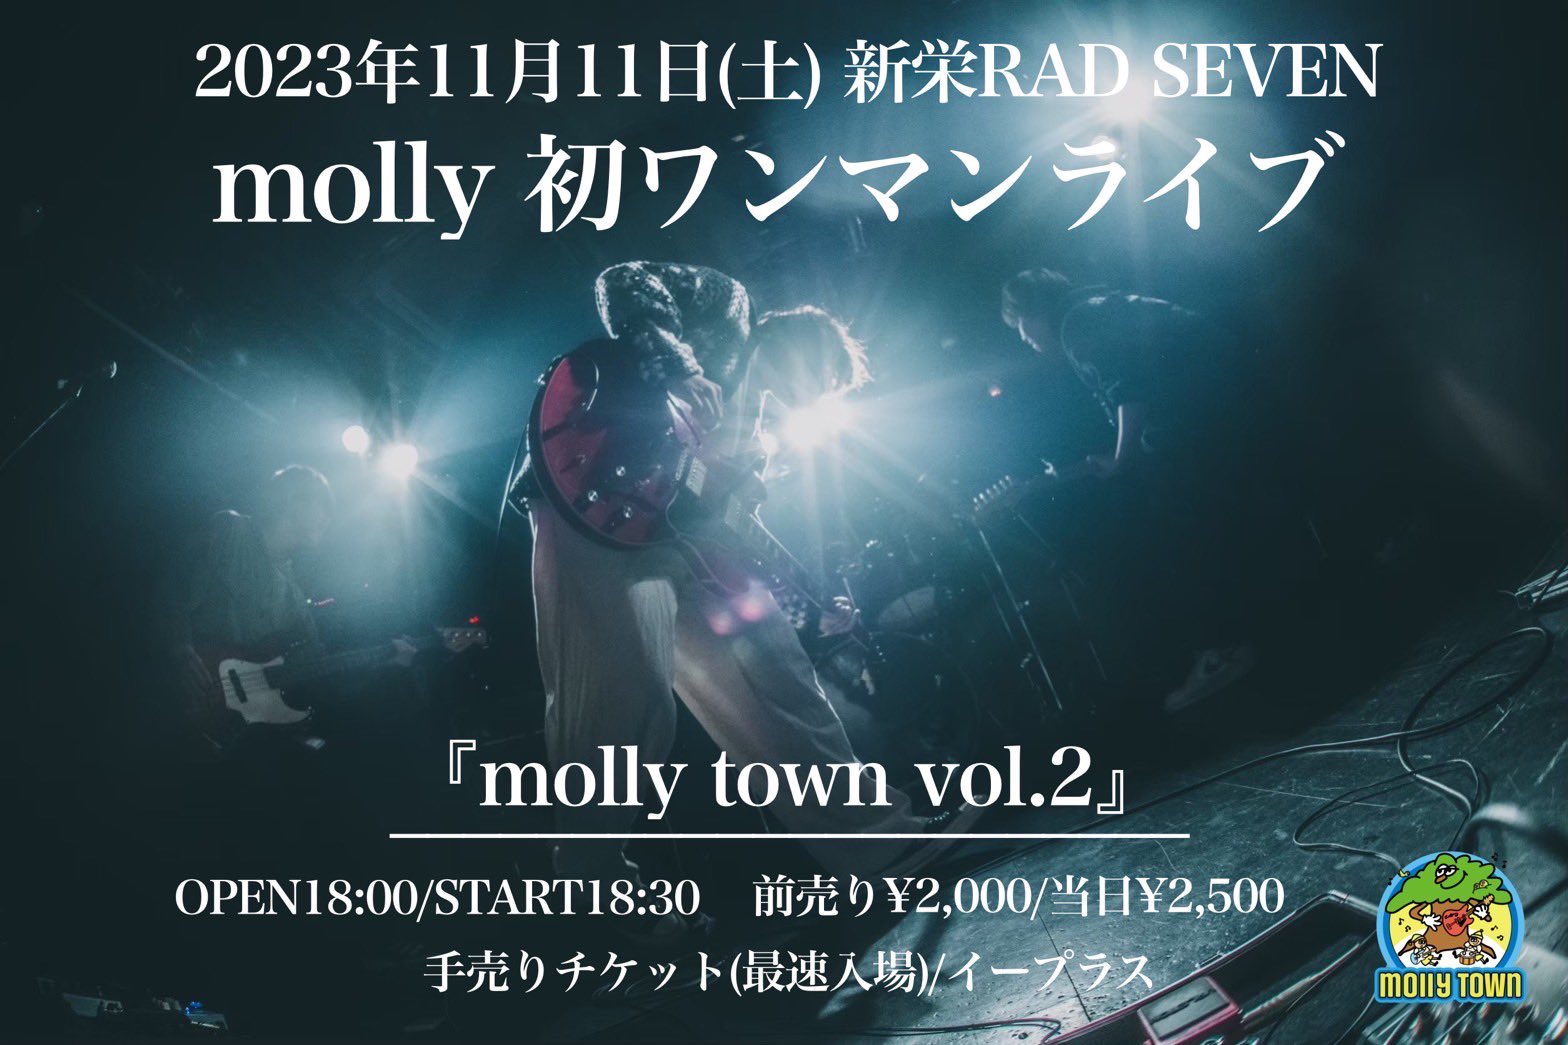 『molly town vol.2』